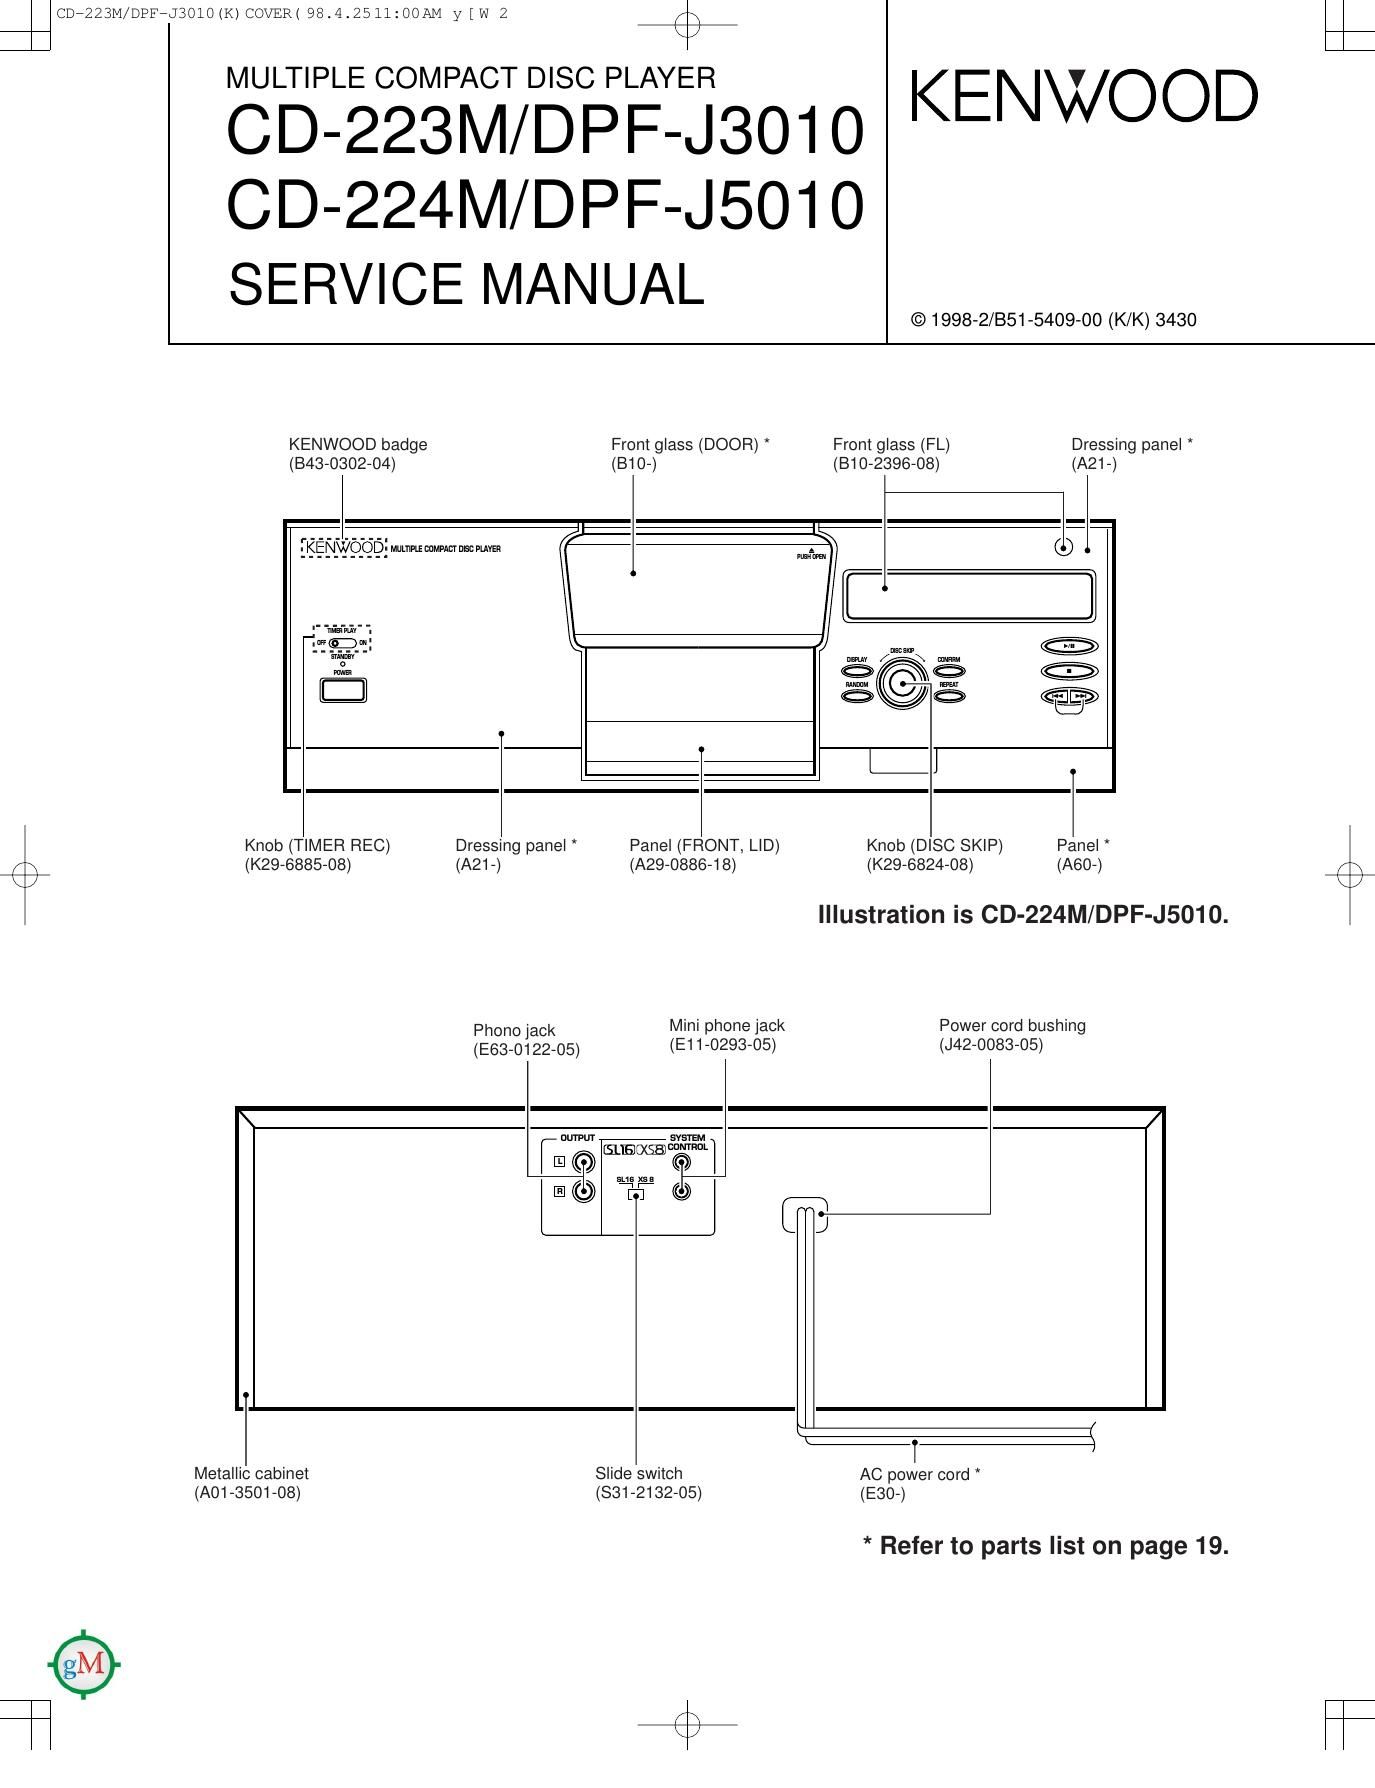 Kenwood CD 223 M Service Manual